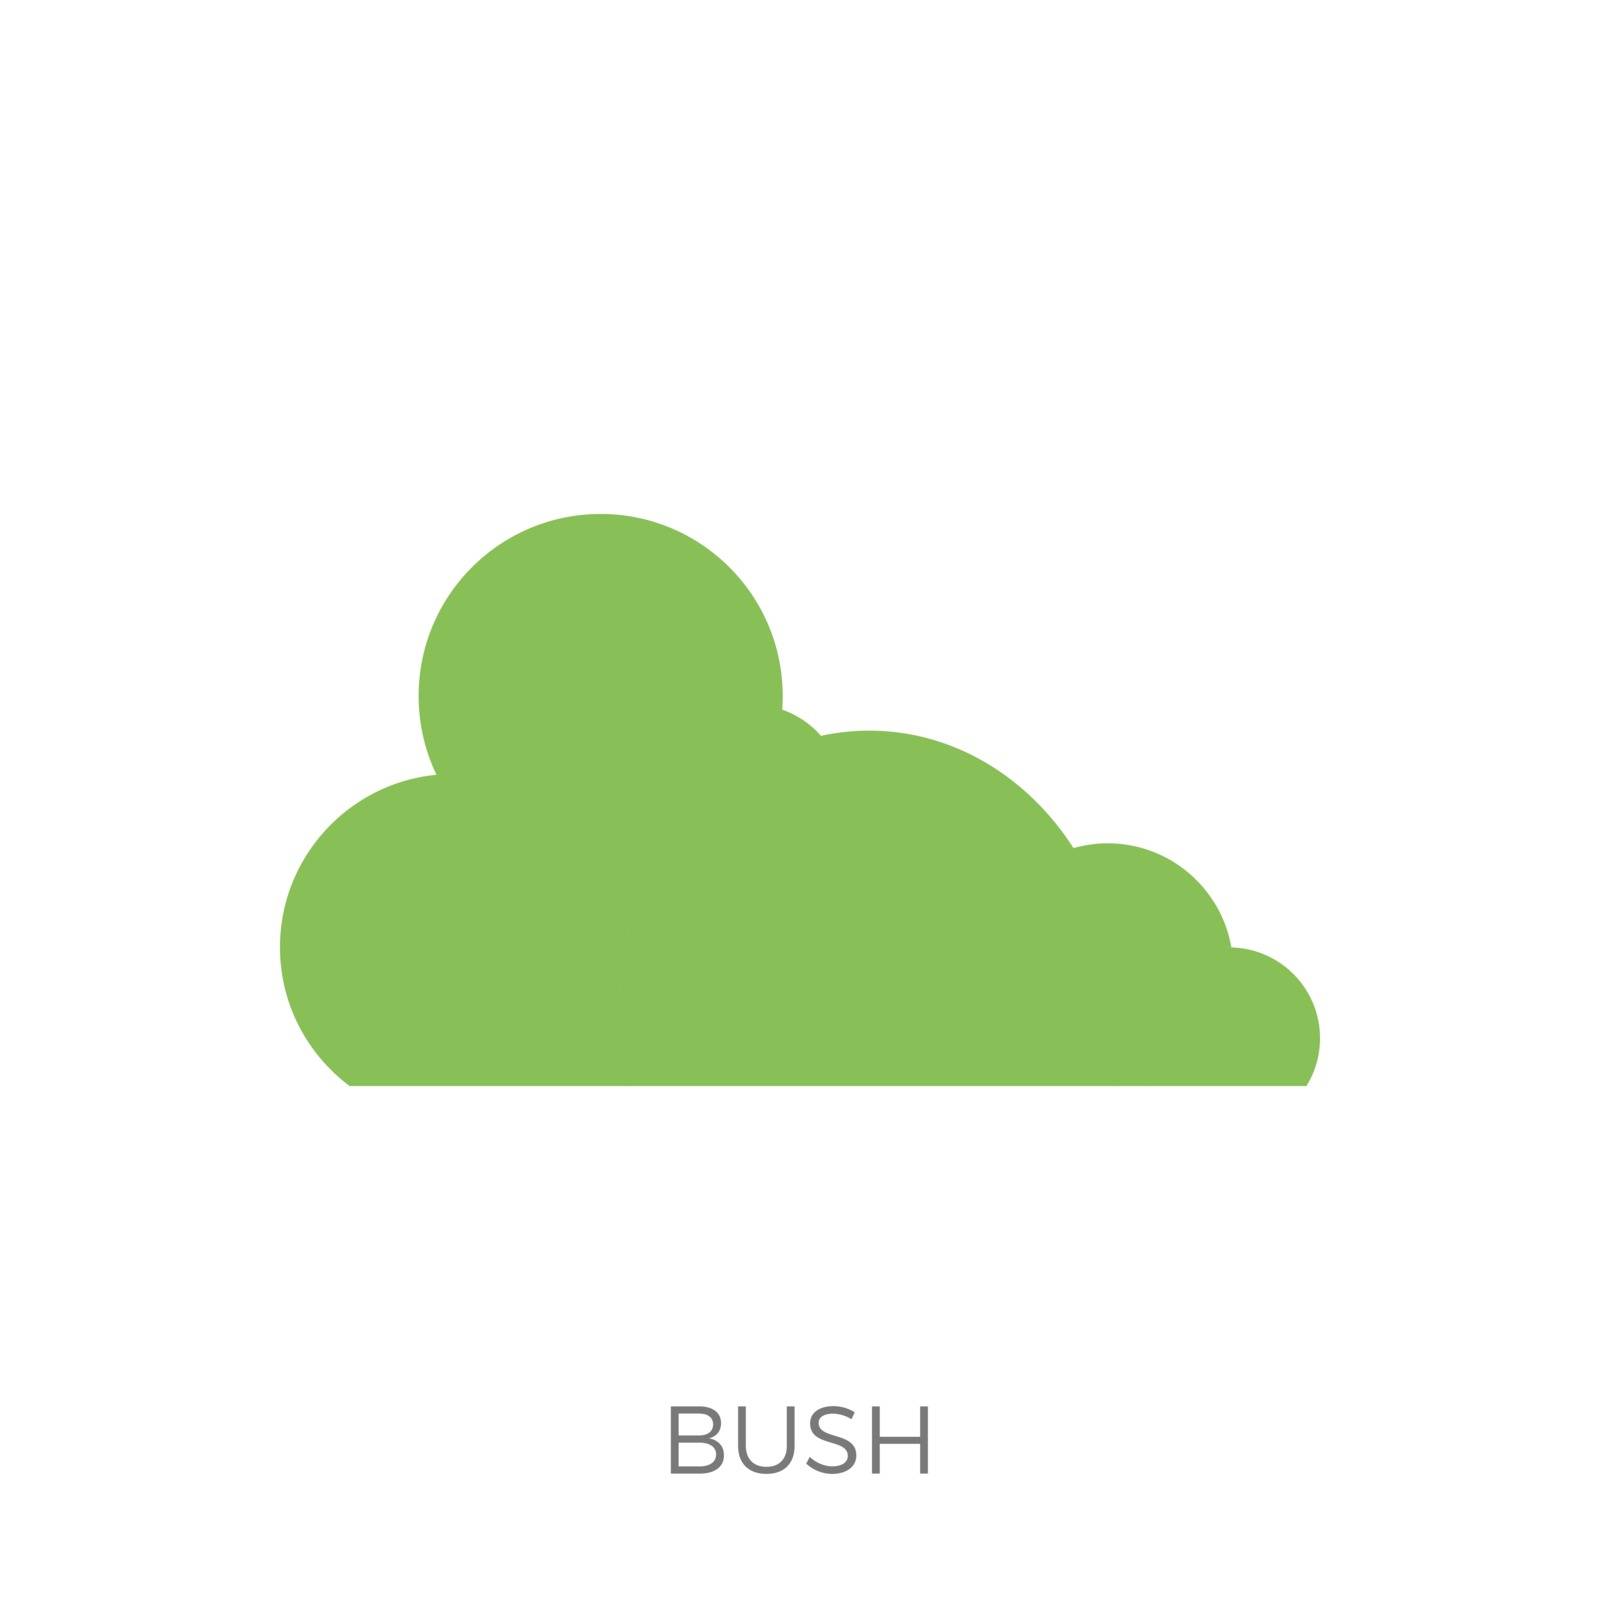 Bush Icon Vector by smoki